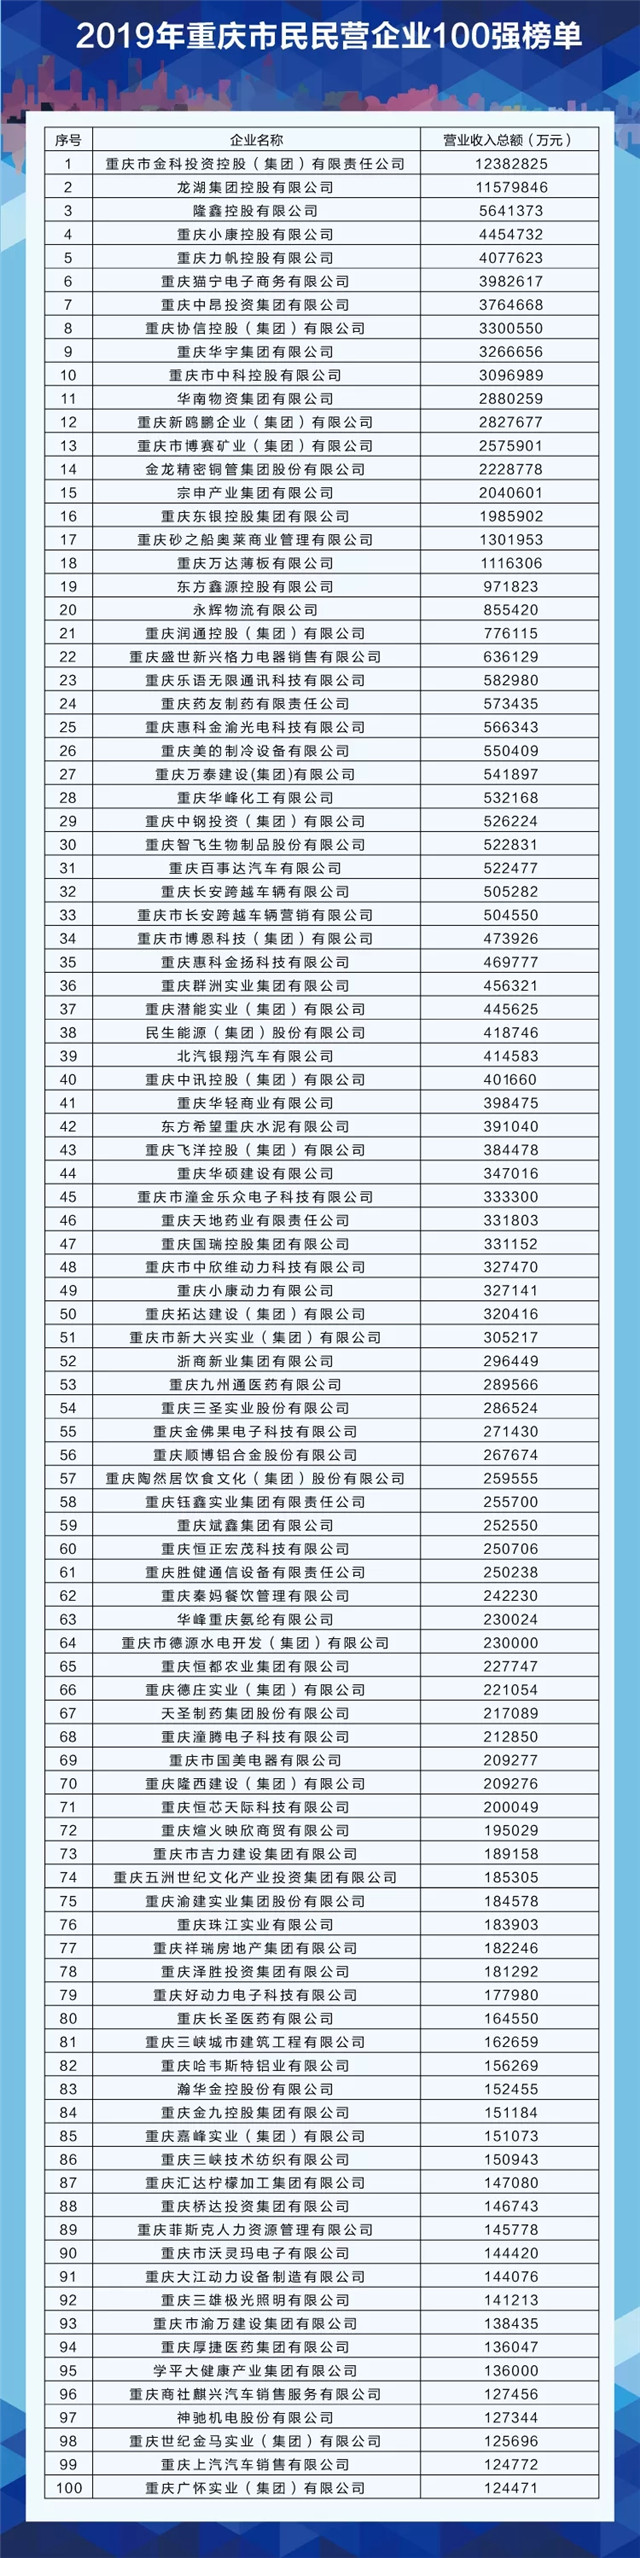 重慶民營企業100強新鮮出爐 宗申位列第15位